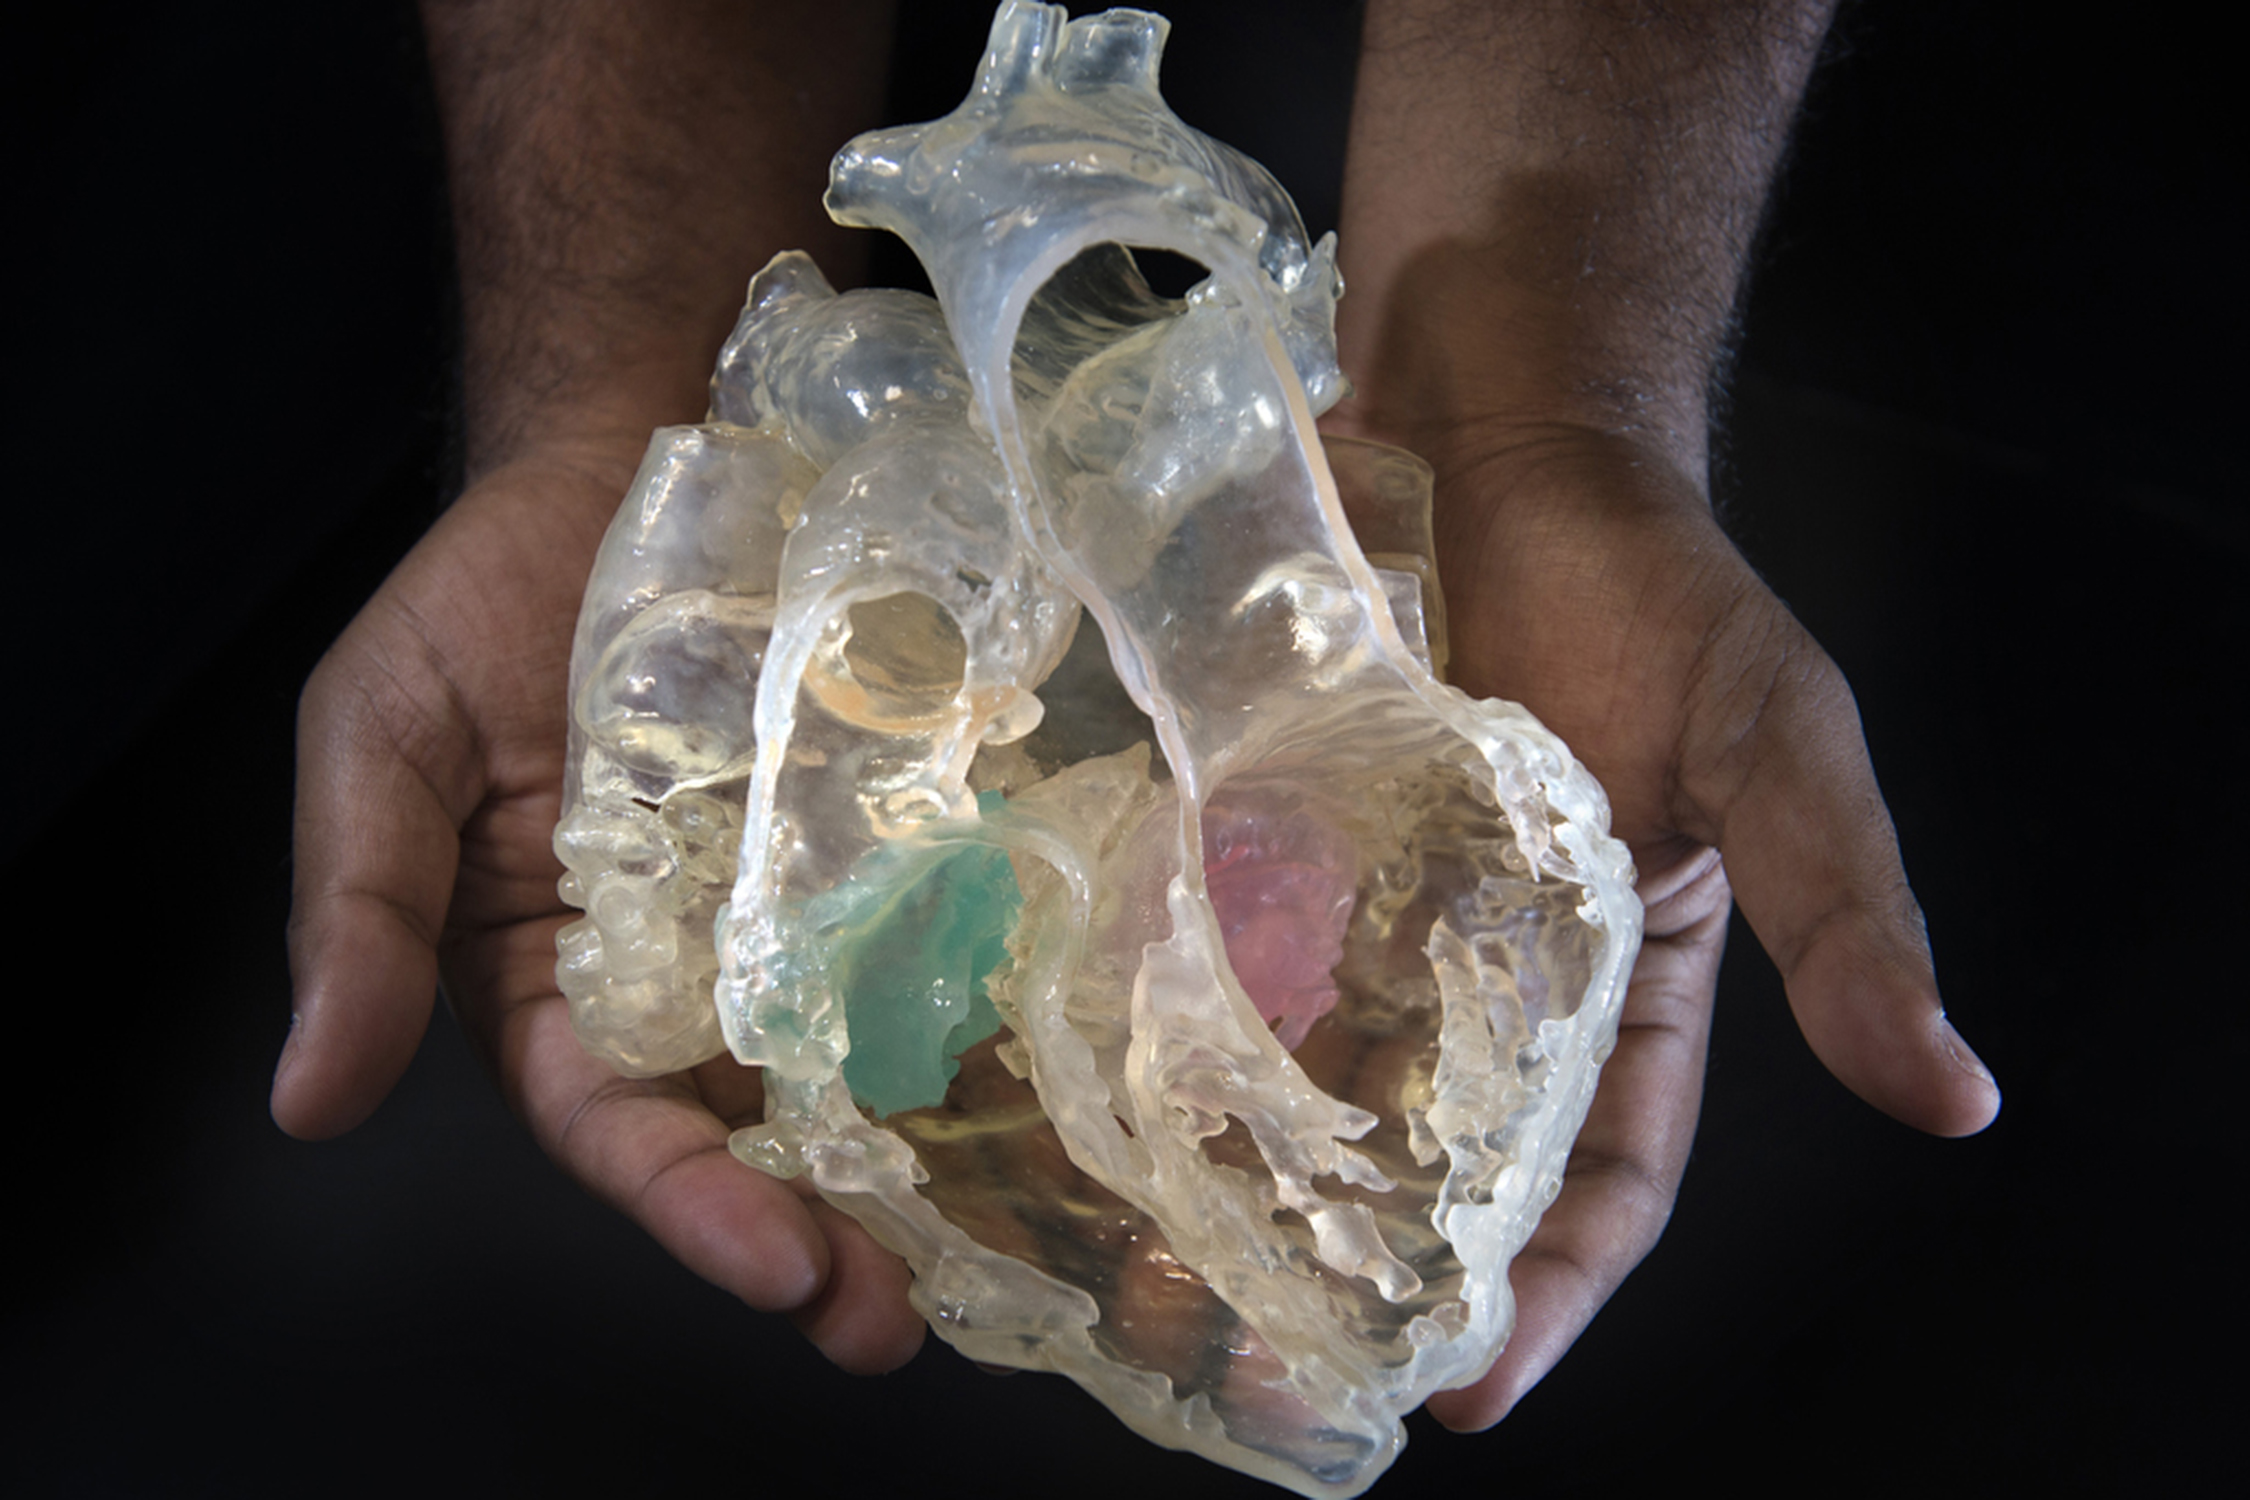 3-D model of heart.